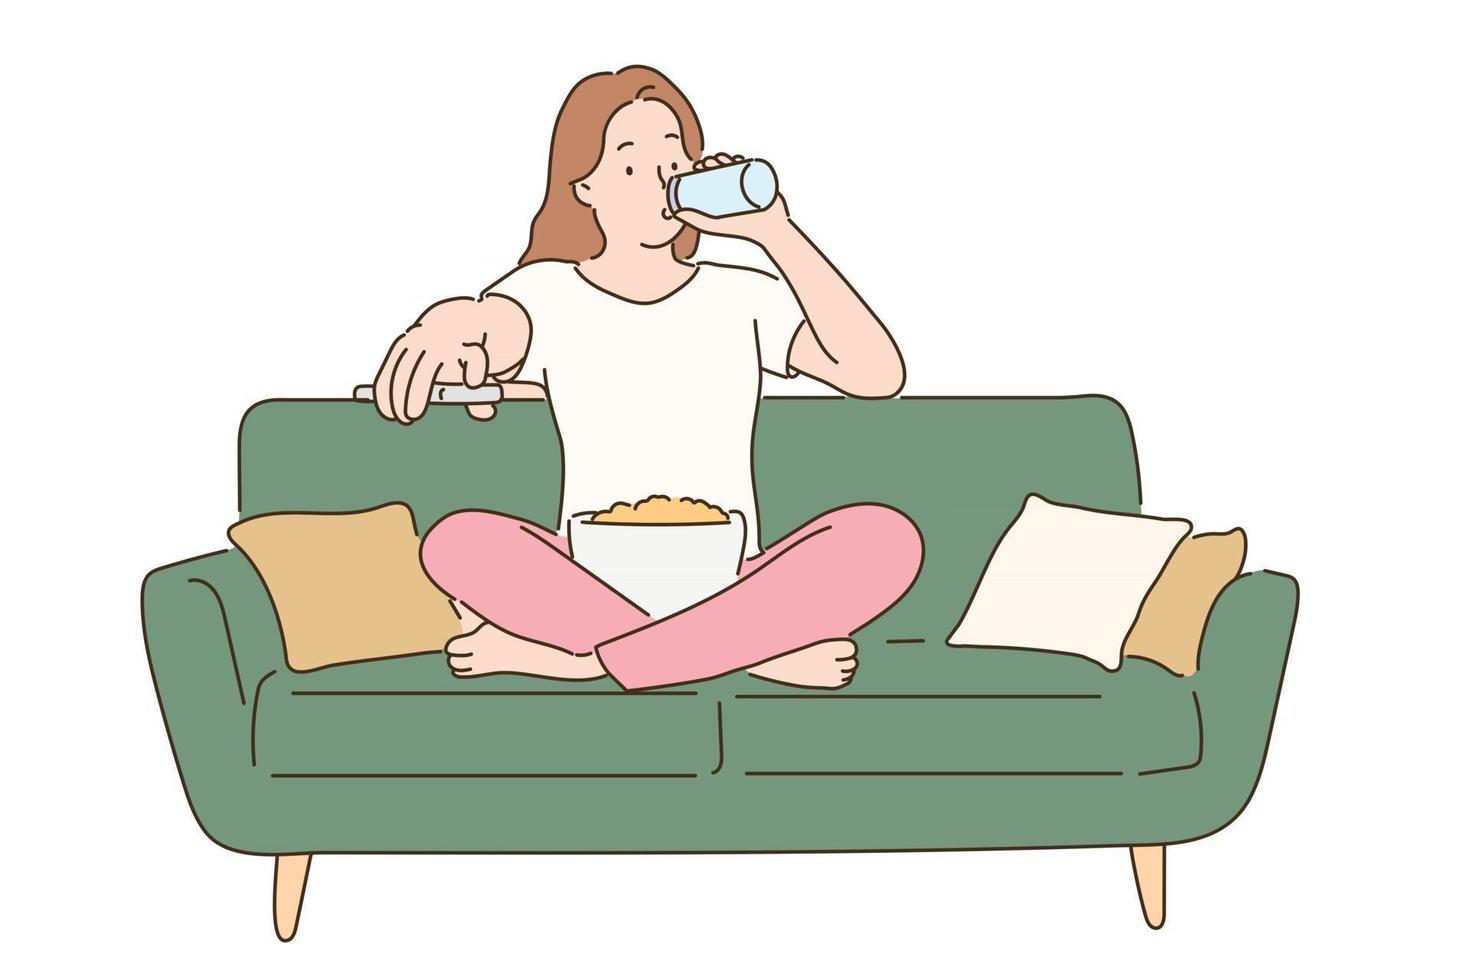 una ragazza è comodamente seduta sul divano e guarda la tv con uno spuntino tra le gambe. illustrazioni di disegno vettoriale stile disegnato a mano.